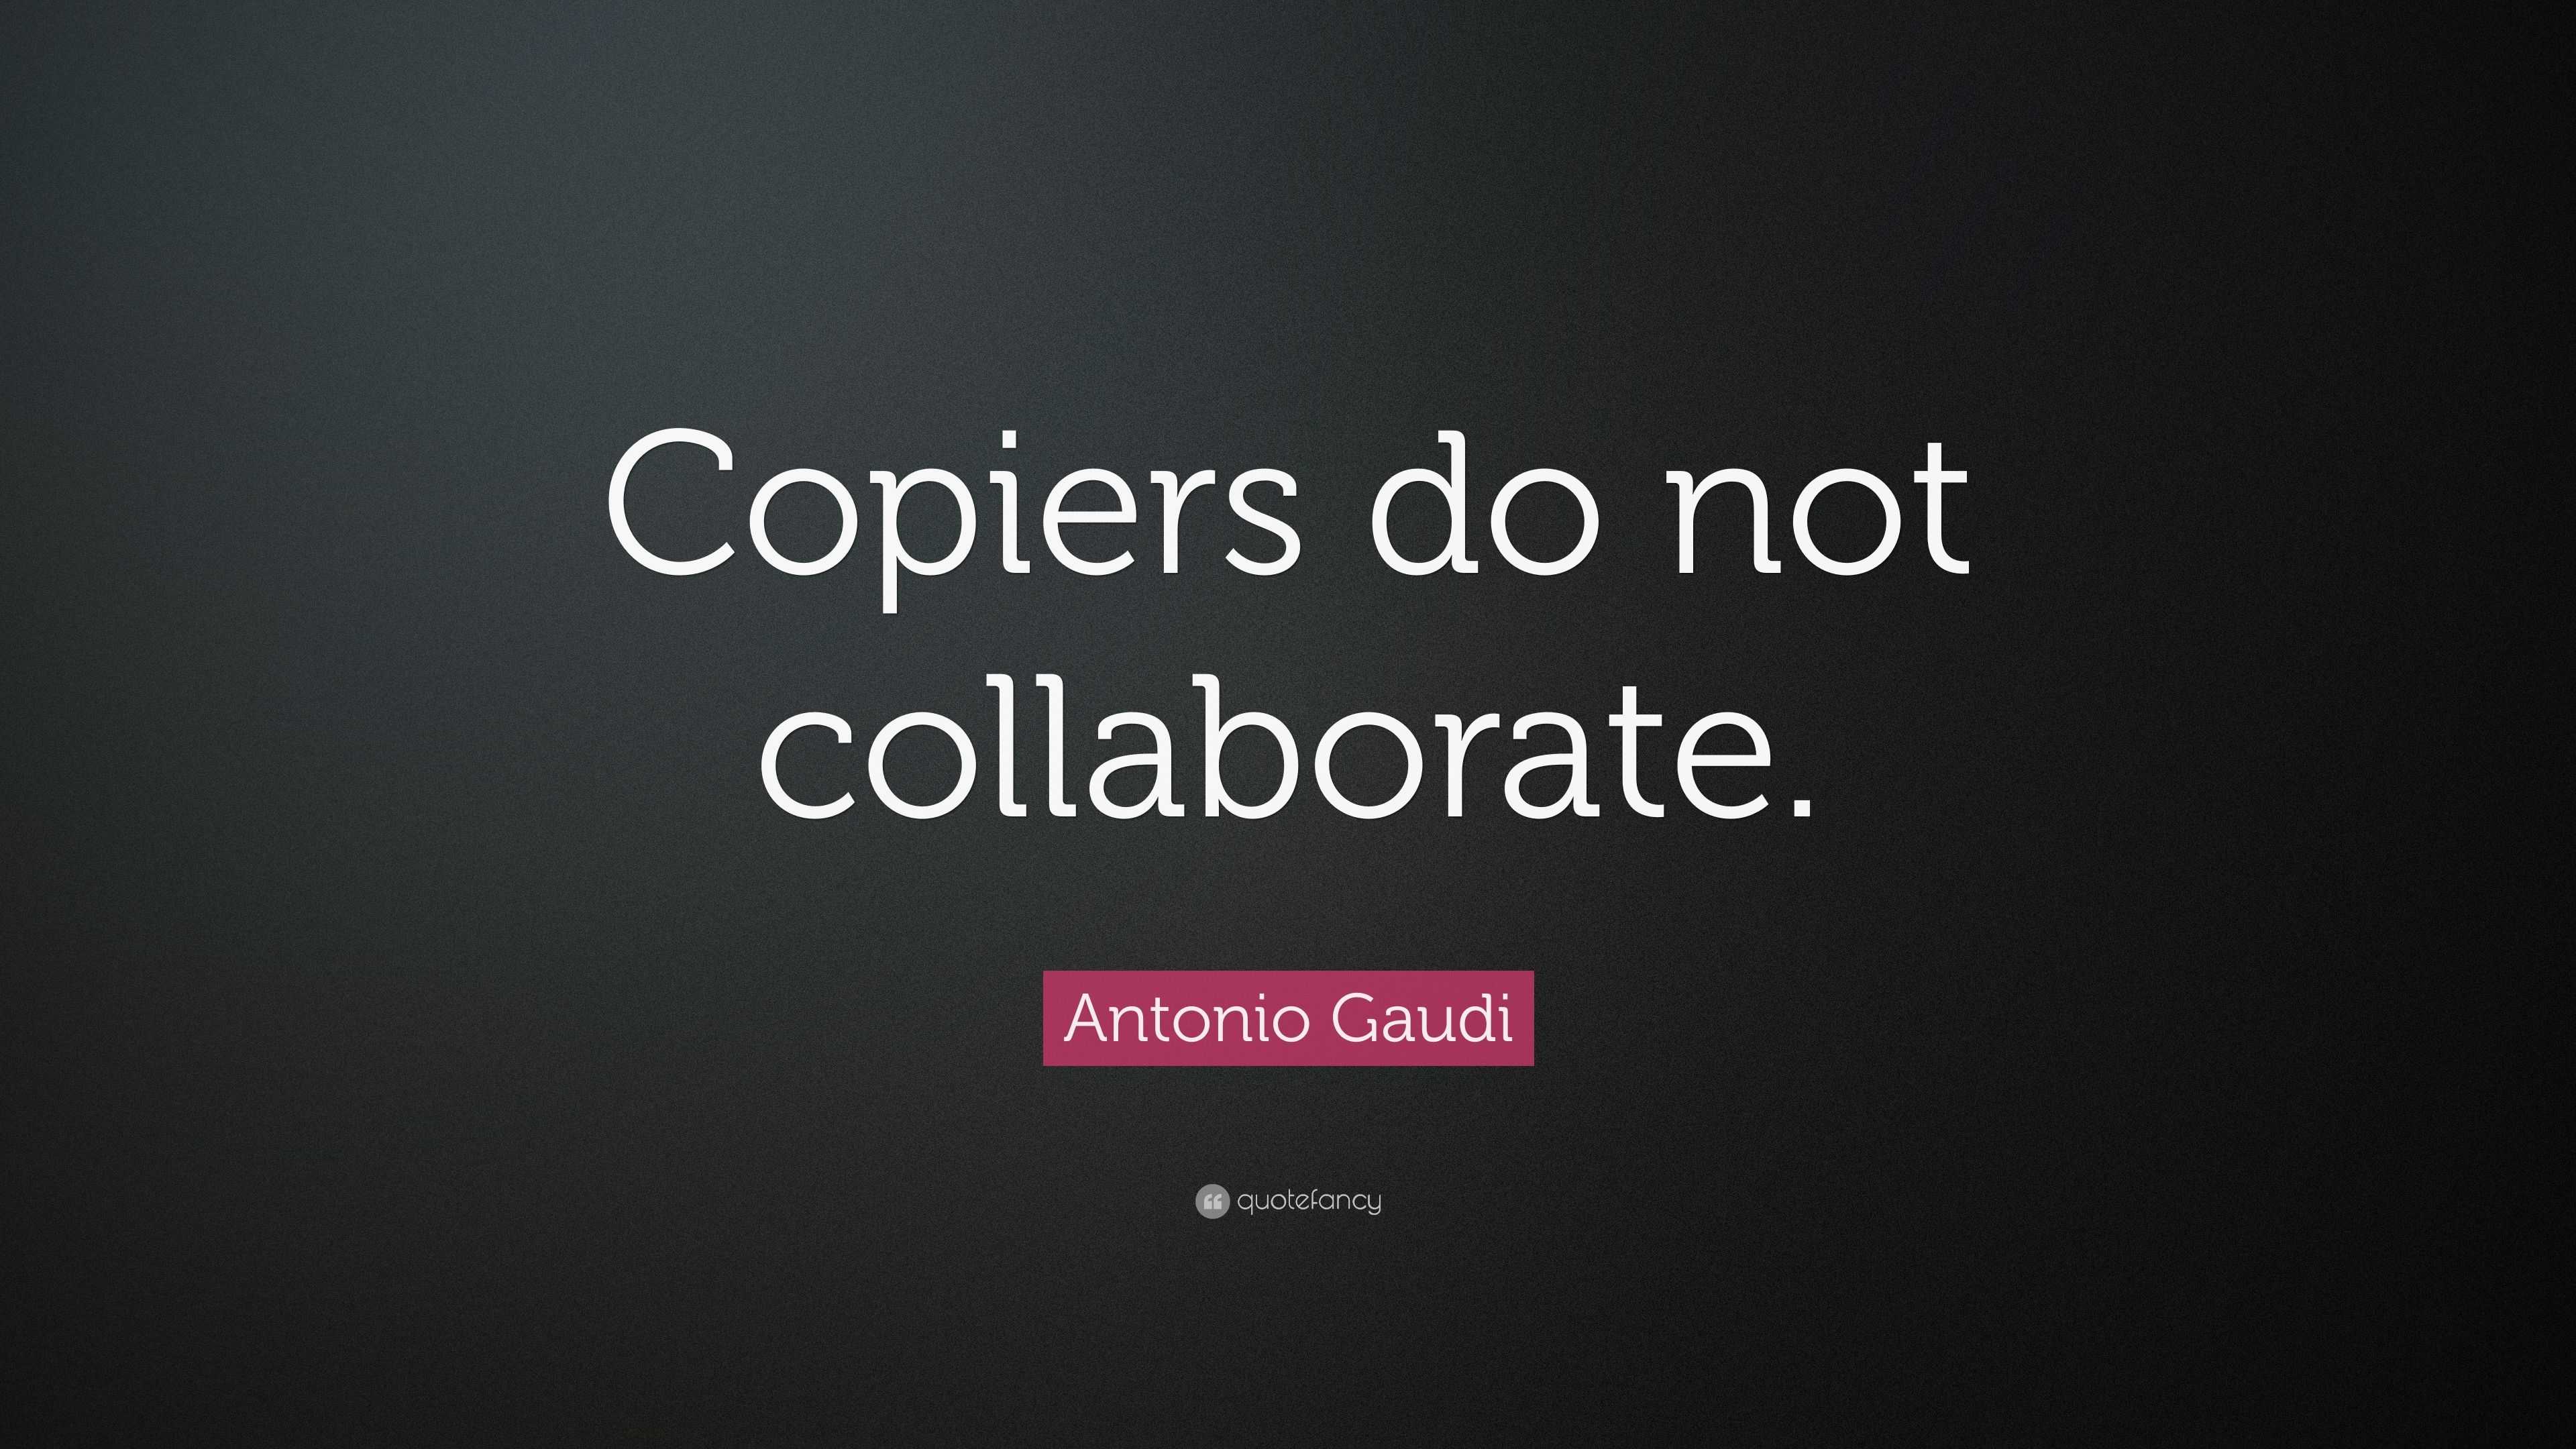 Antonio Gaudi Quote “Copiers do not collaborate.”